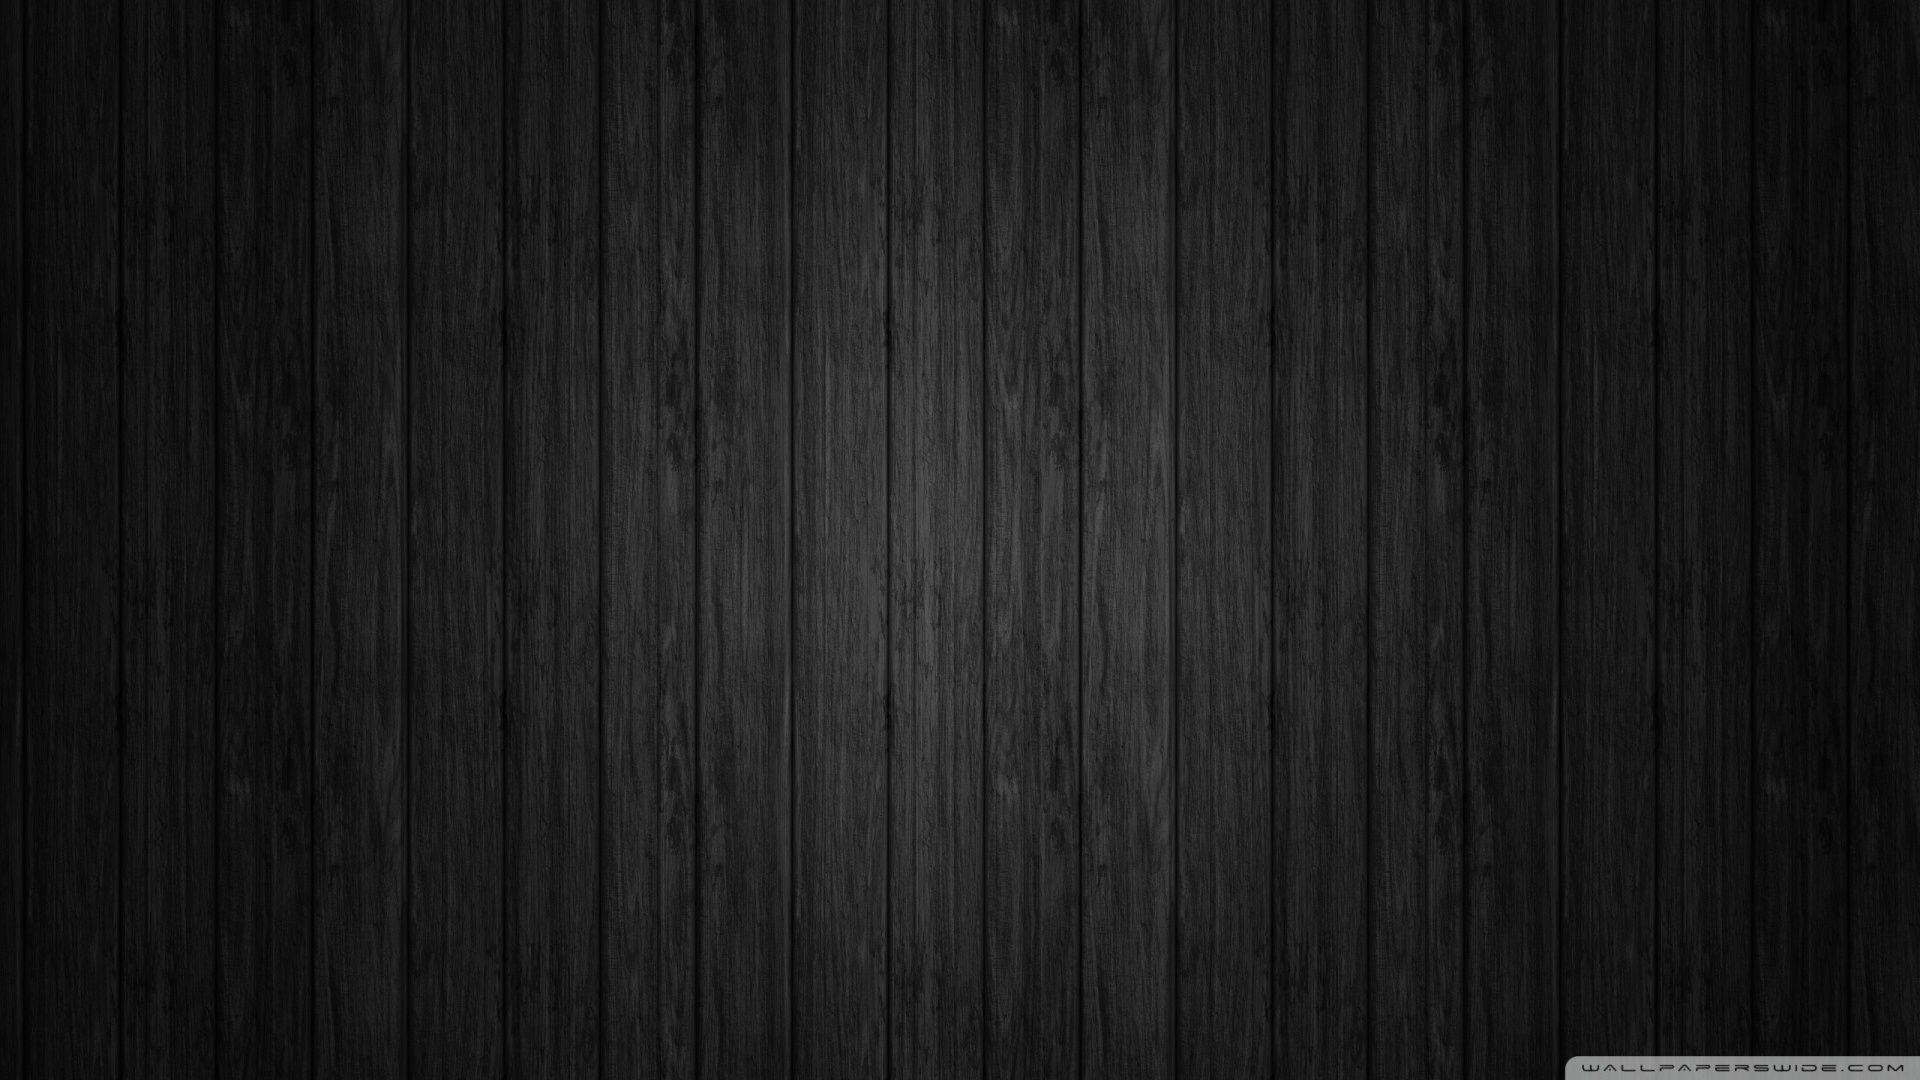 Plain Black Wallpaper Background. Gambar, Kolase foto, Seni